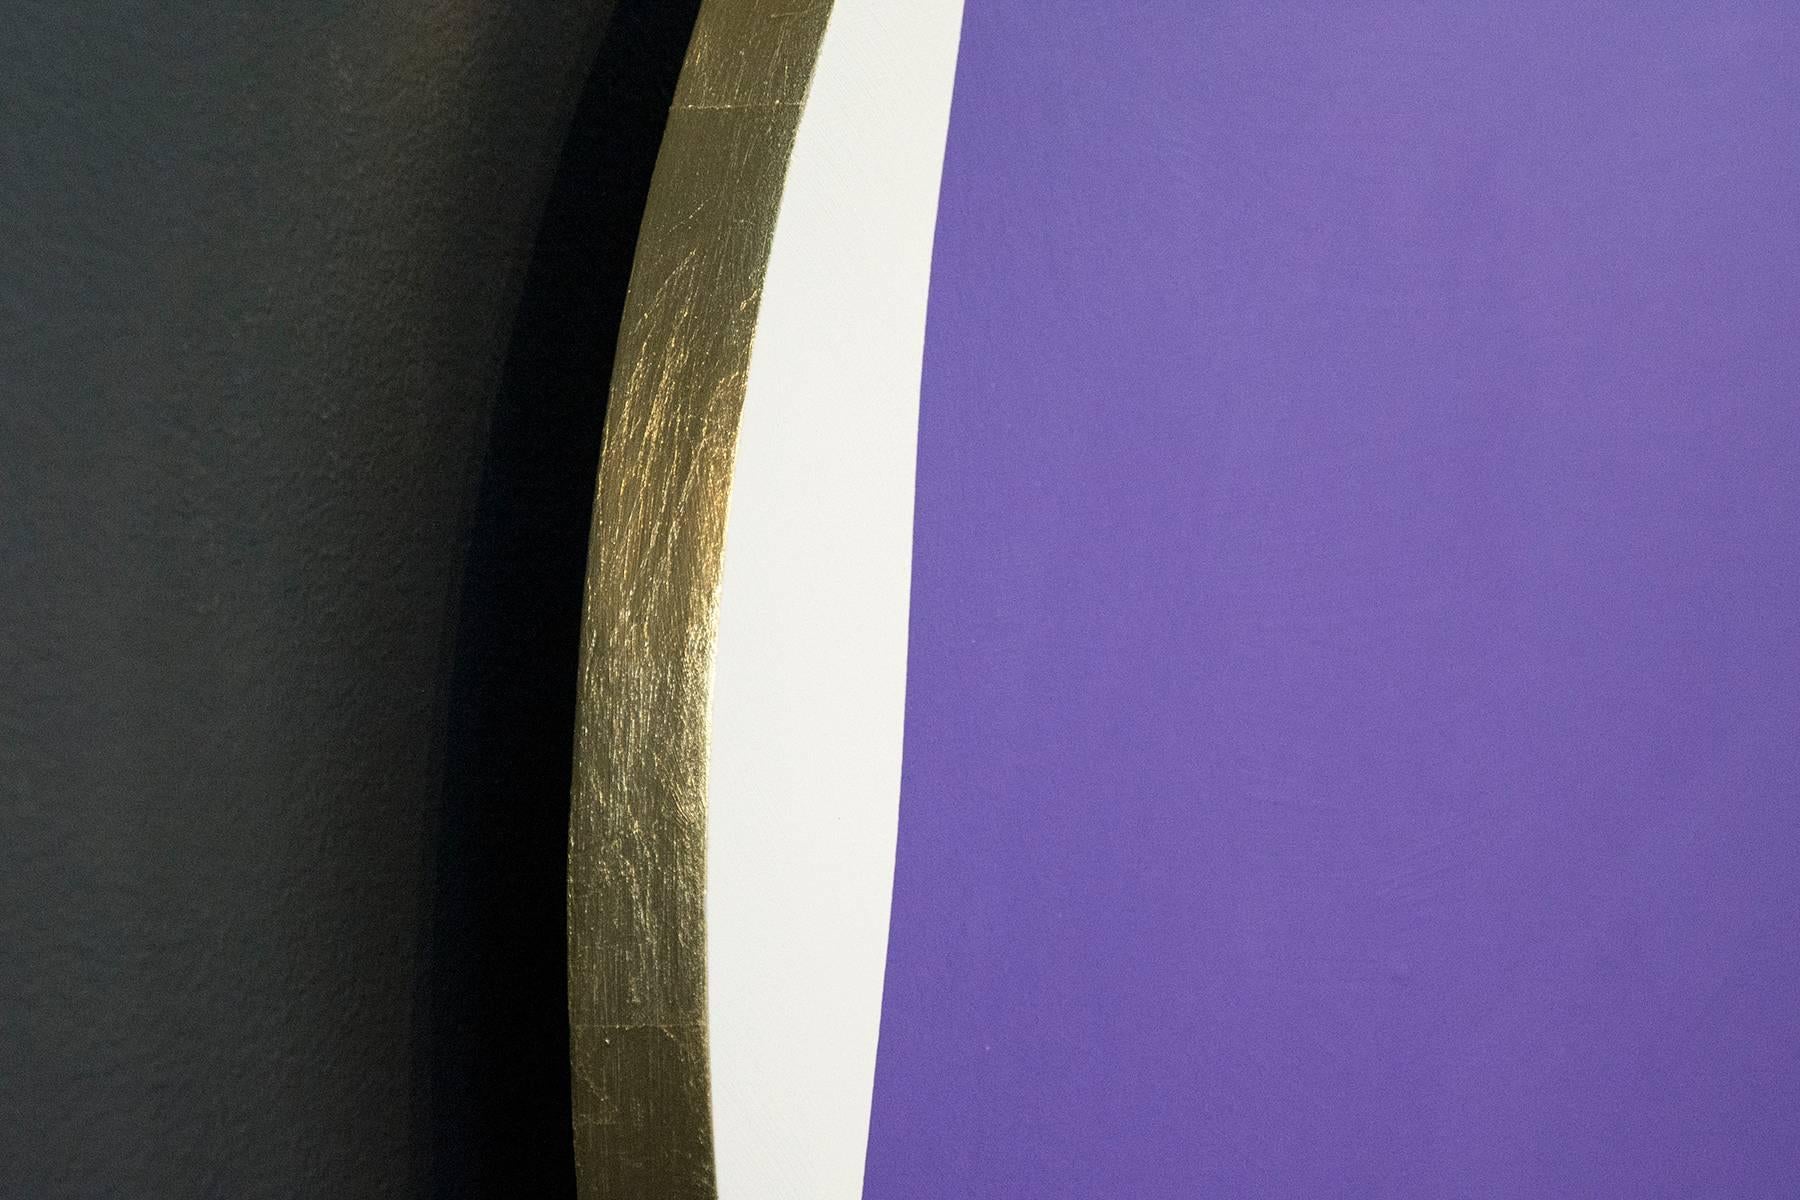 In diesem dynamischen Werk von Aron Hill sitzt eine tiefviolette geometrische Form auf einem weißen Tondo (Kreis)  umrahmt von einer schwarzen Leinwand. Die runde Tafel ist mit Blattgold umrandet, das einen Heiligenschein um das Gemälde herum